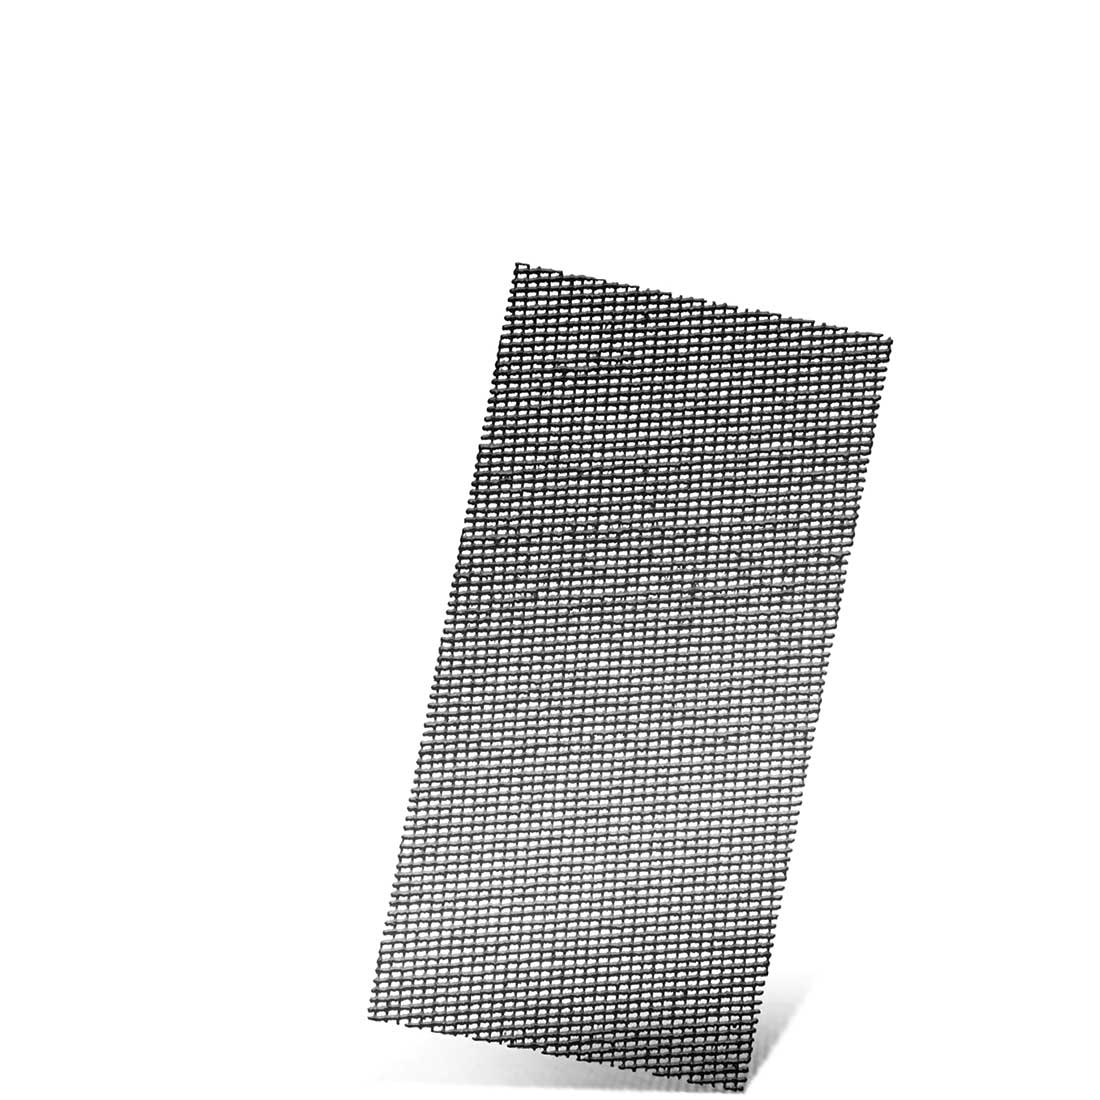 MENZER Klett-Schleifgitter für Schwingschleifer, K60–180, 186 x 93 mm / Gitter / Siliciumcarbid